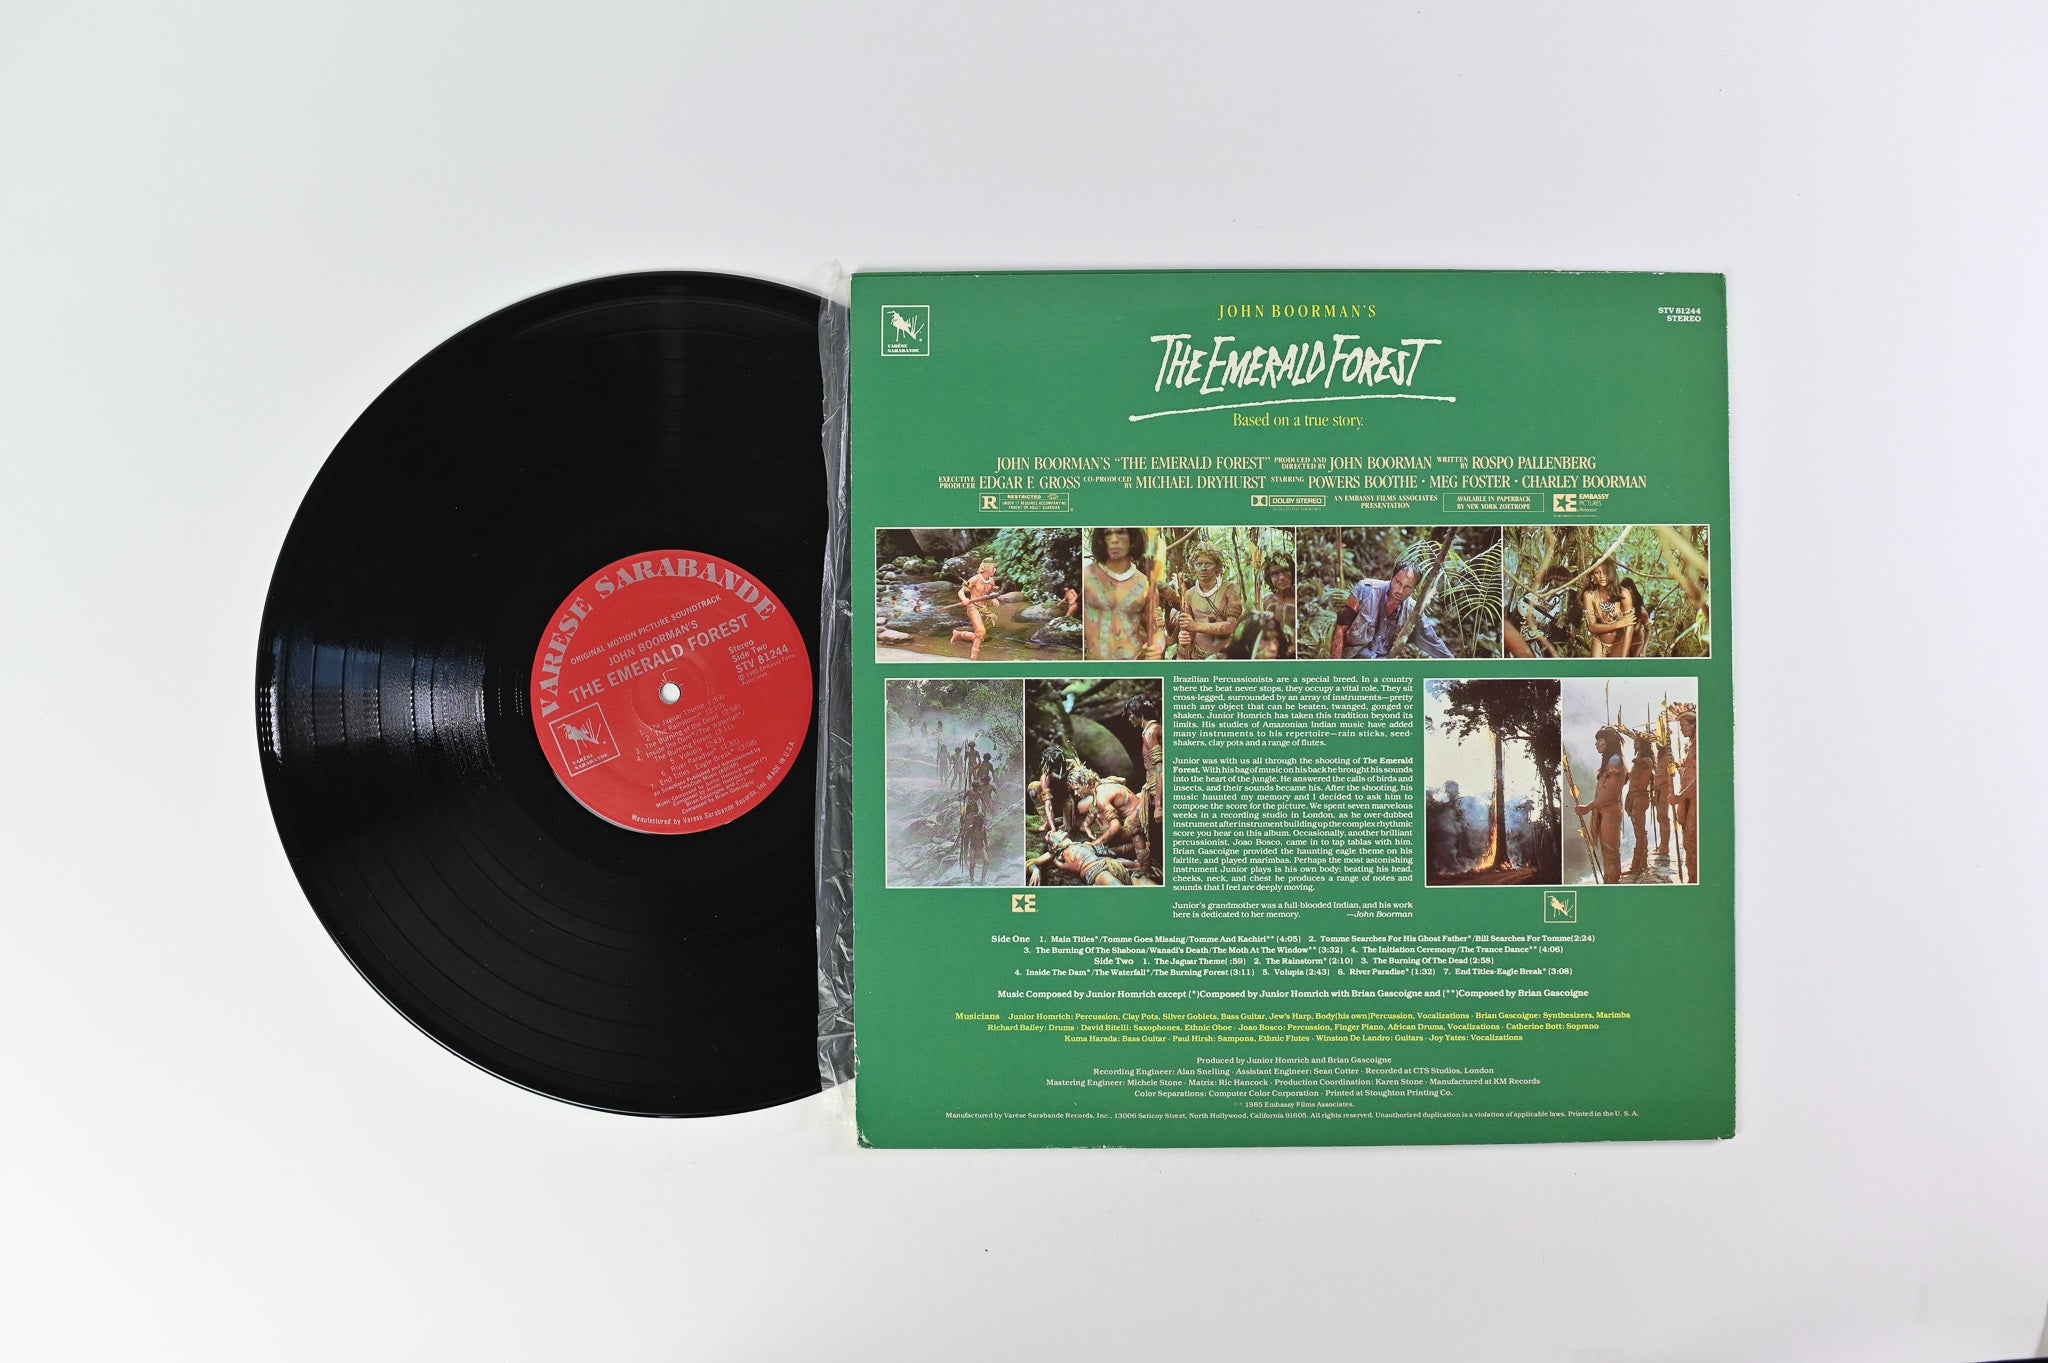 Junior Homrich - The Emerald Forest (Original Motion Picture Soundtrack) on Varese Sarabande